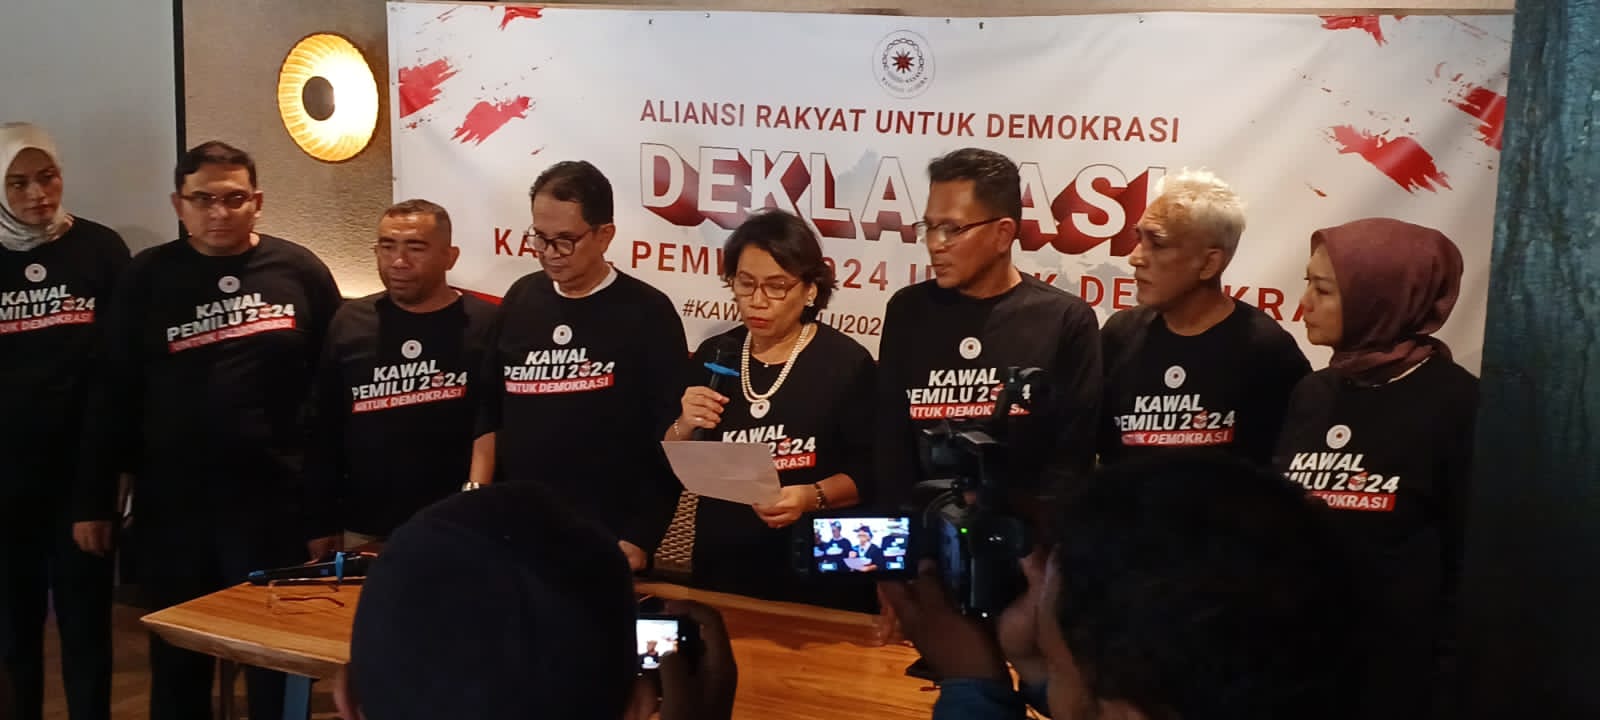 Deklarasi kawal Pemilu 2024 di Jakarta, Jumat, 14/7/2023 | Dok. Forum Keadilan